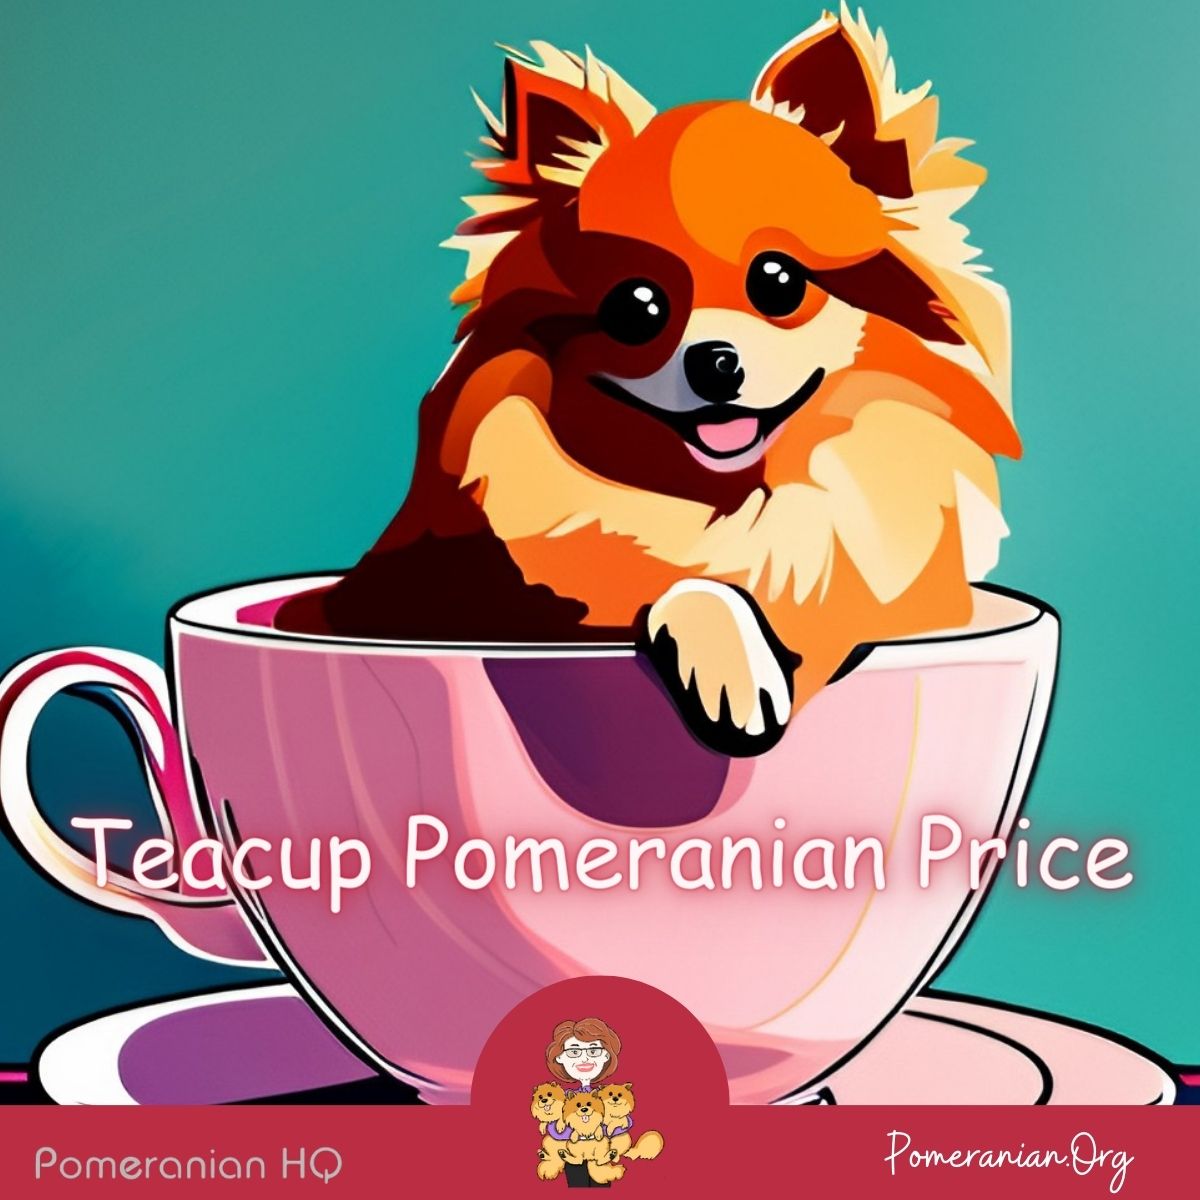 Teacup Pomeranian Price